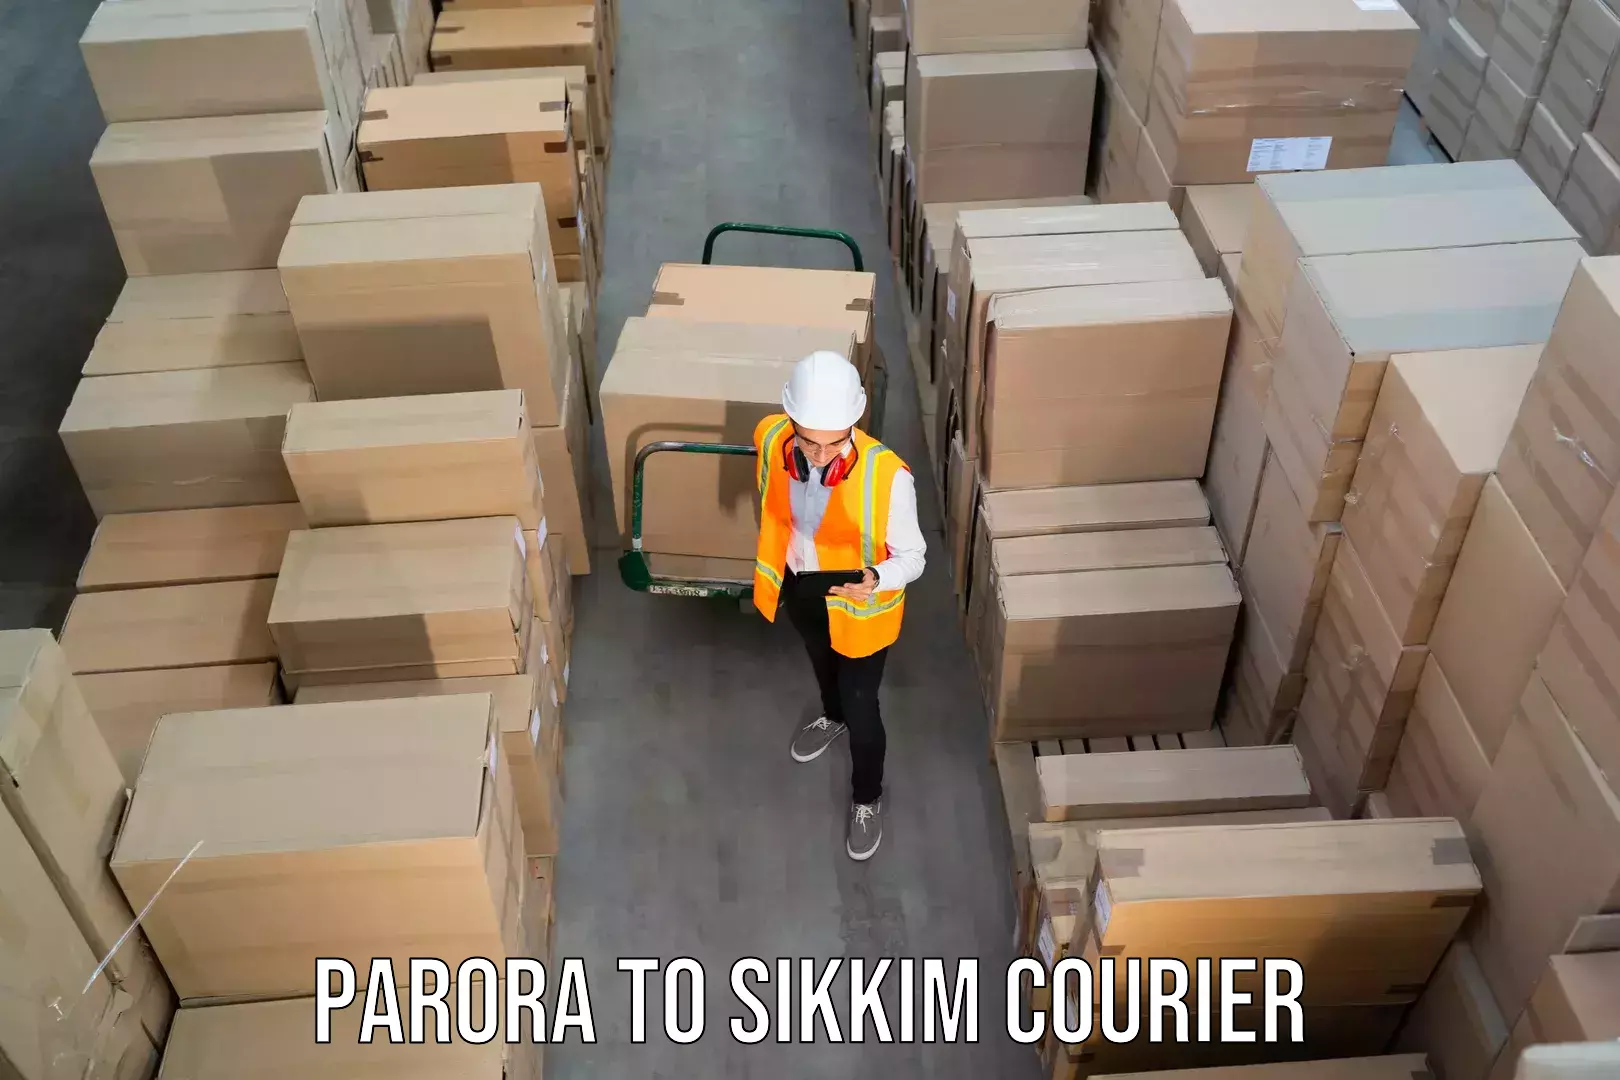 Courier service comparison Parora to Rangpo